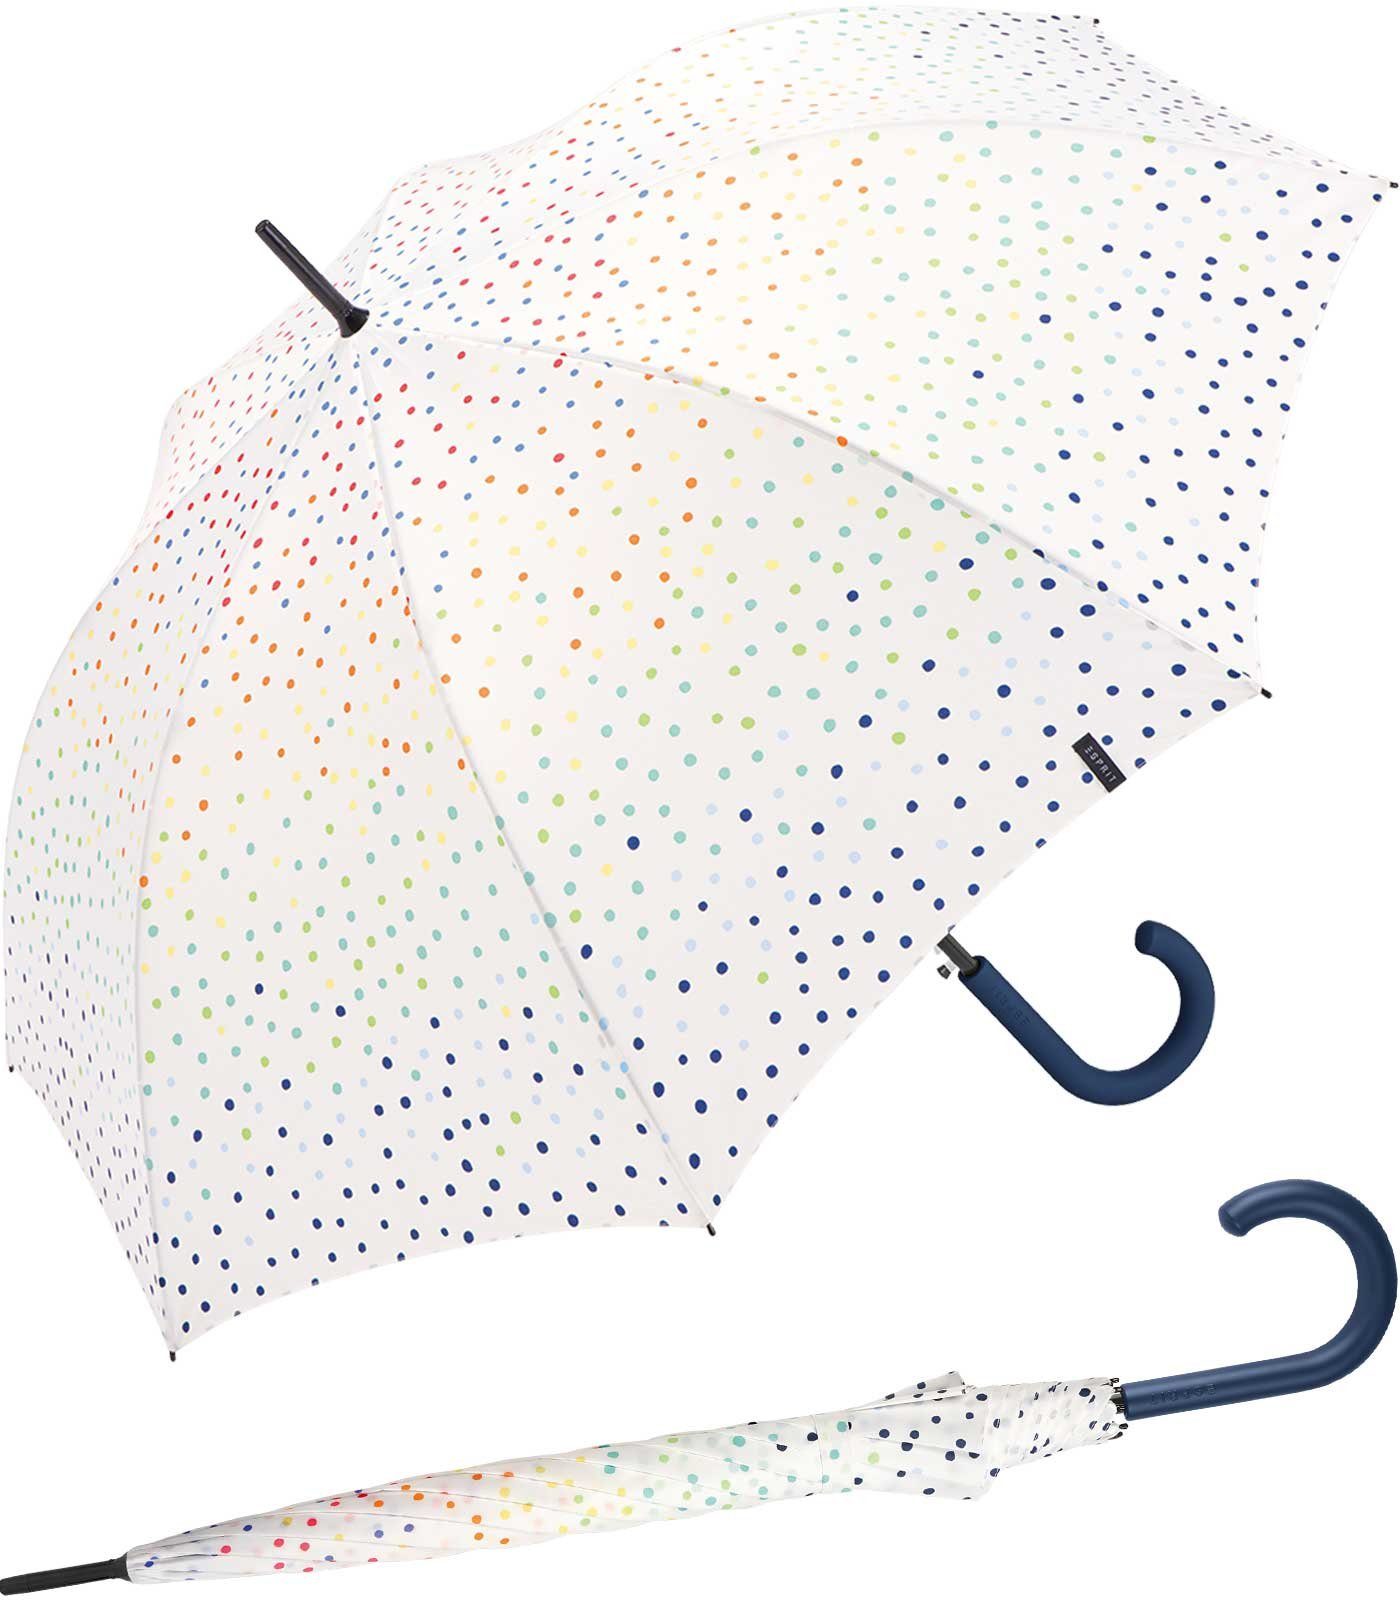 Esprit Langregenschirm Damen-Stockschirm groß und stabil mit Automatik, farbenfroh bedruckt mit kleinen Punkten